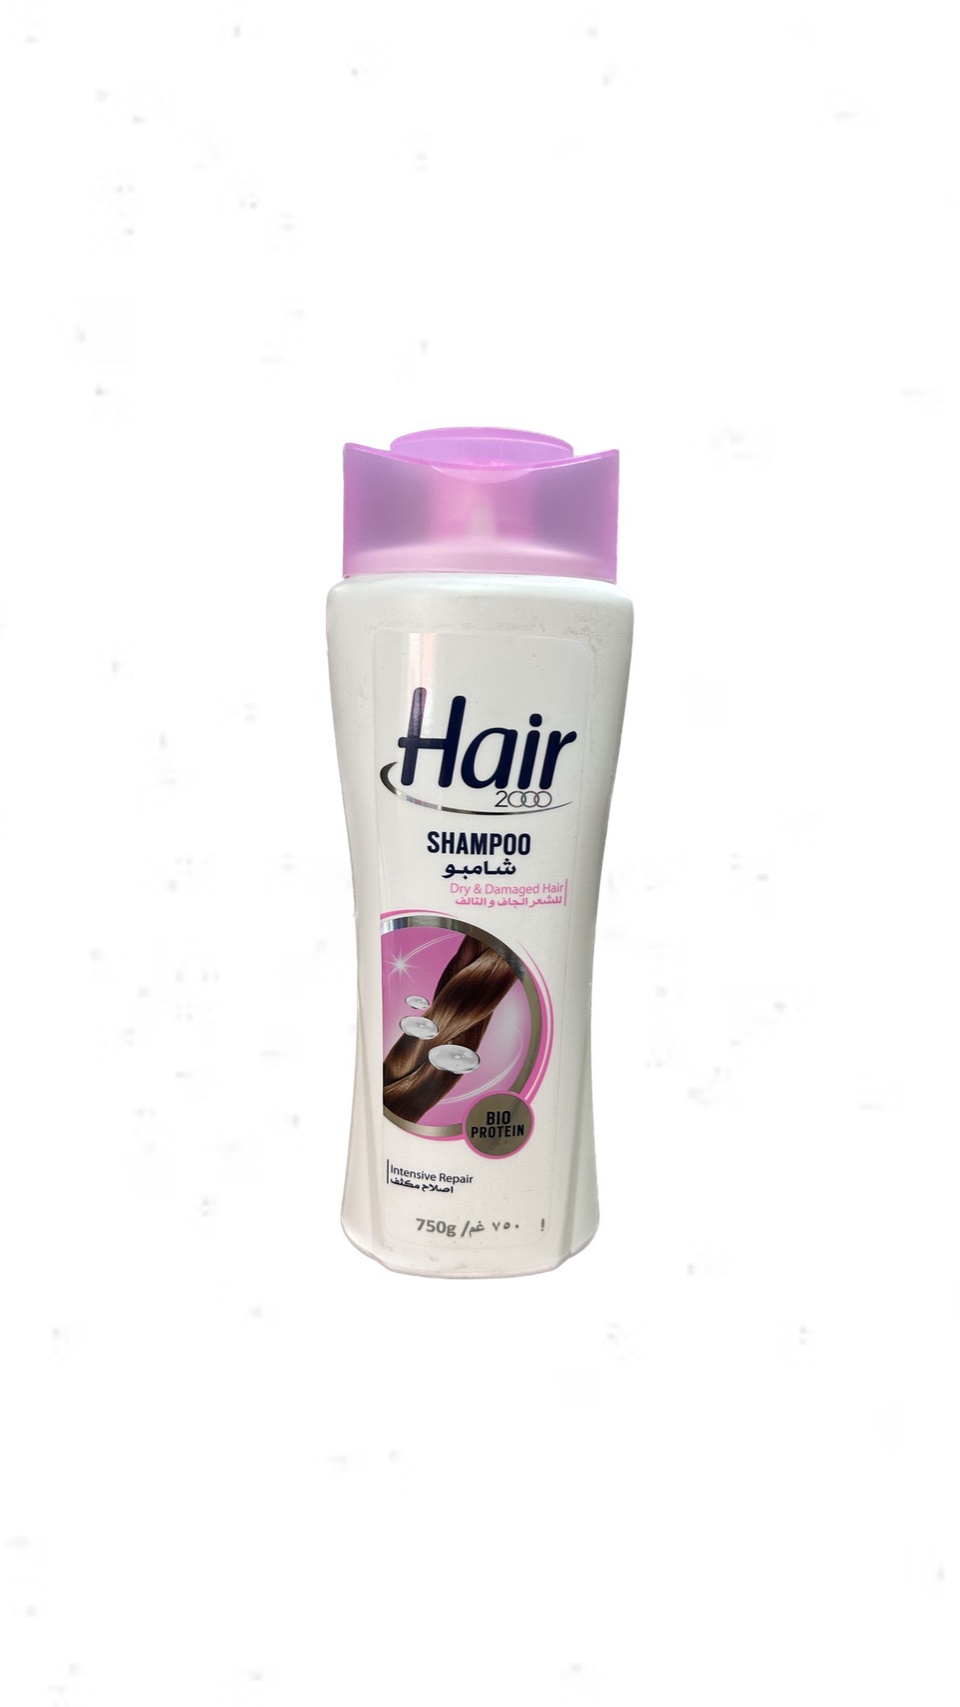 Шампунь Hair для сухих и поврежденных волос 750 мл - 300 ₽, заказать онлайн.